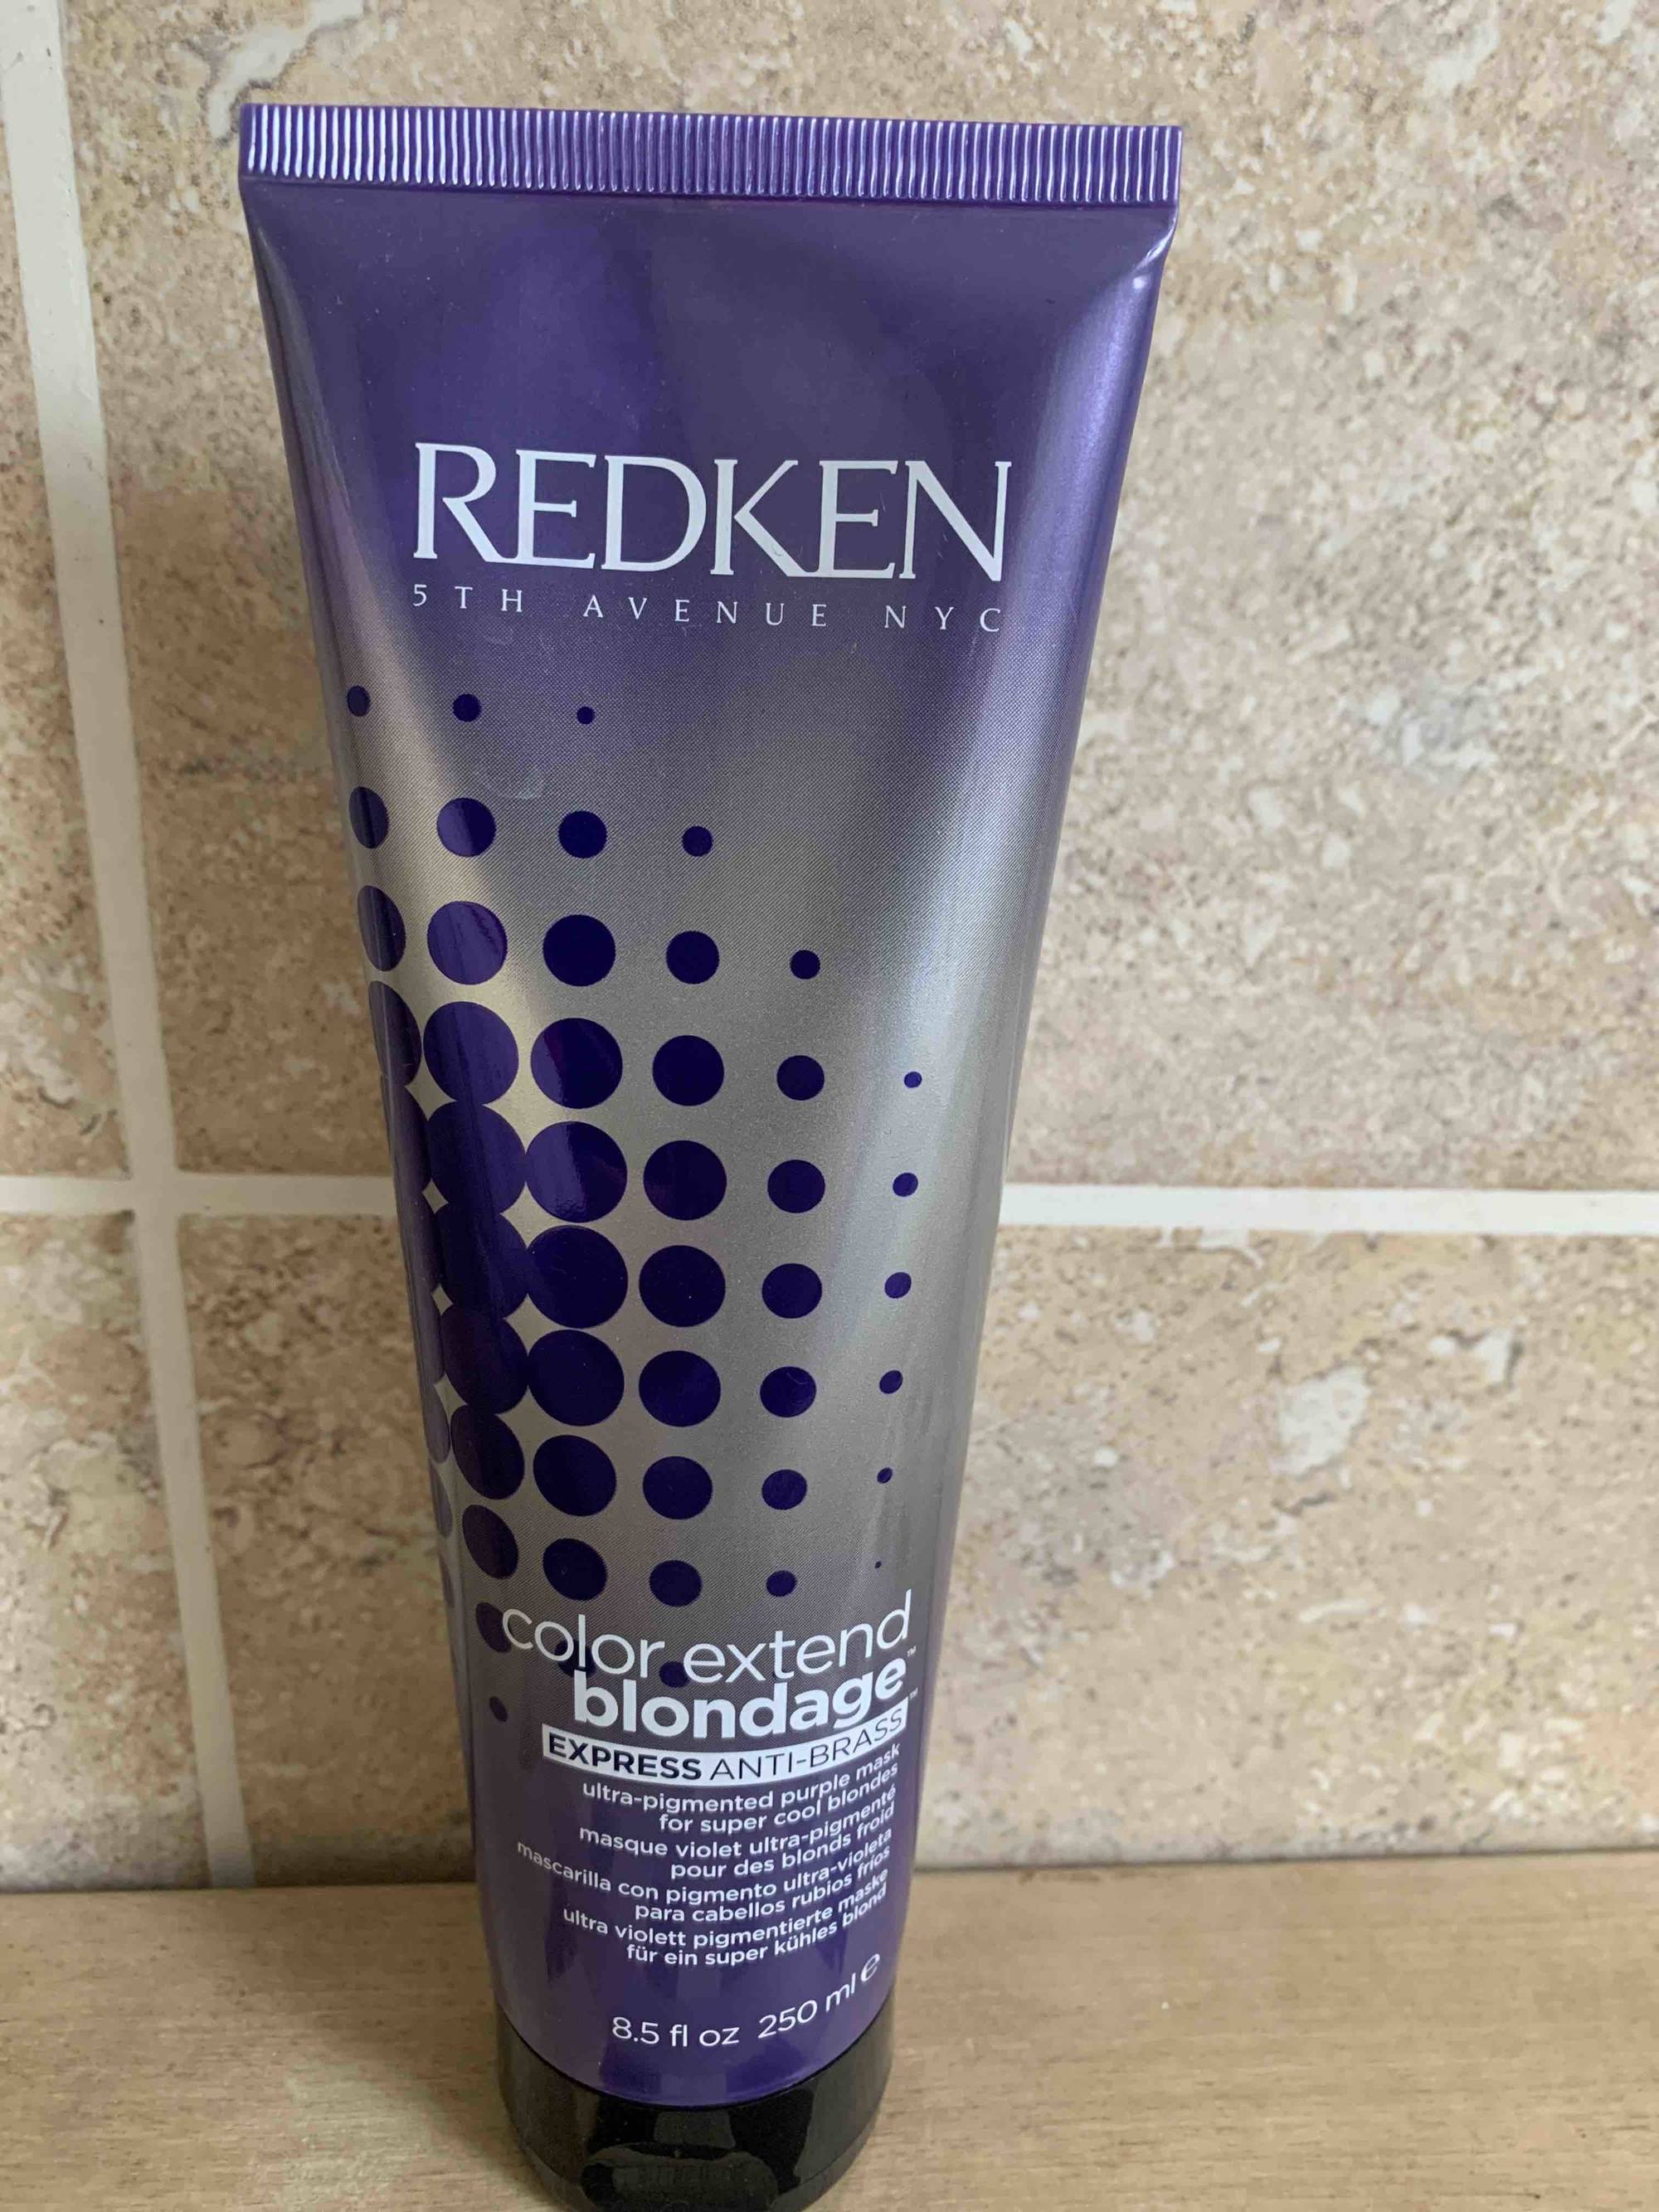 REDKEN - Color extend blondage - Express anti-brass - Masque violet ultra-pigmenté pour les blonds froid